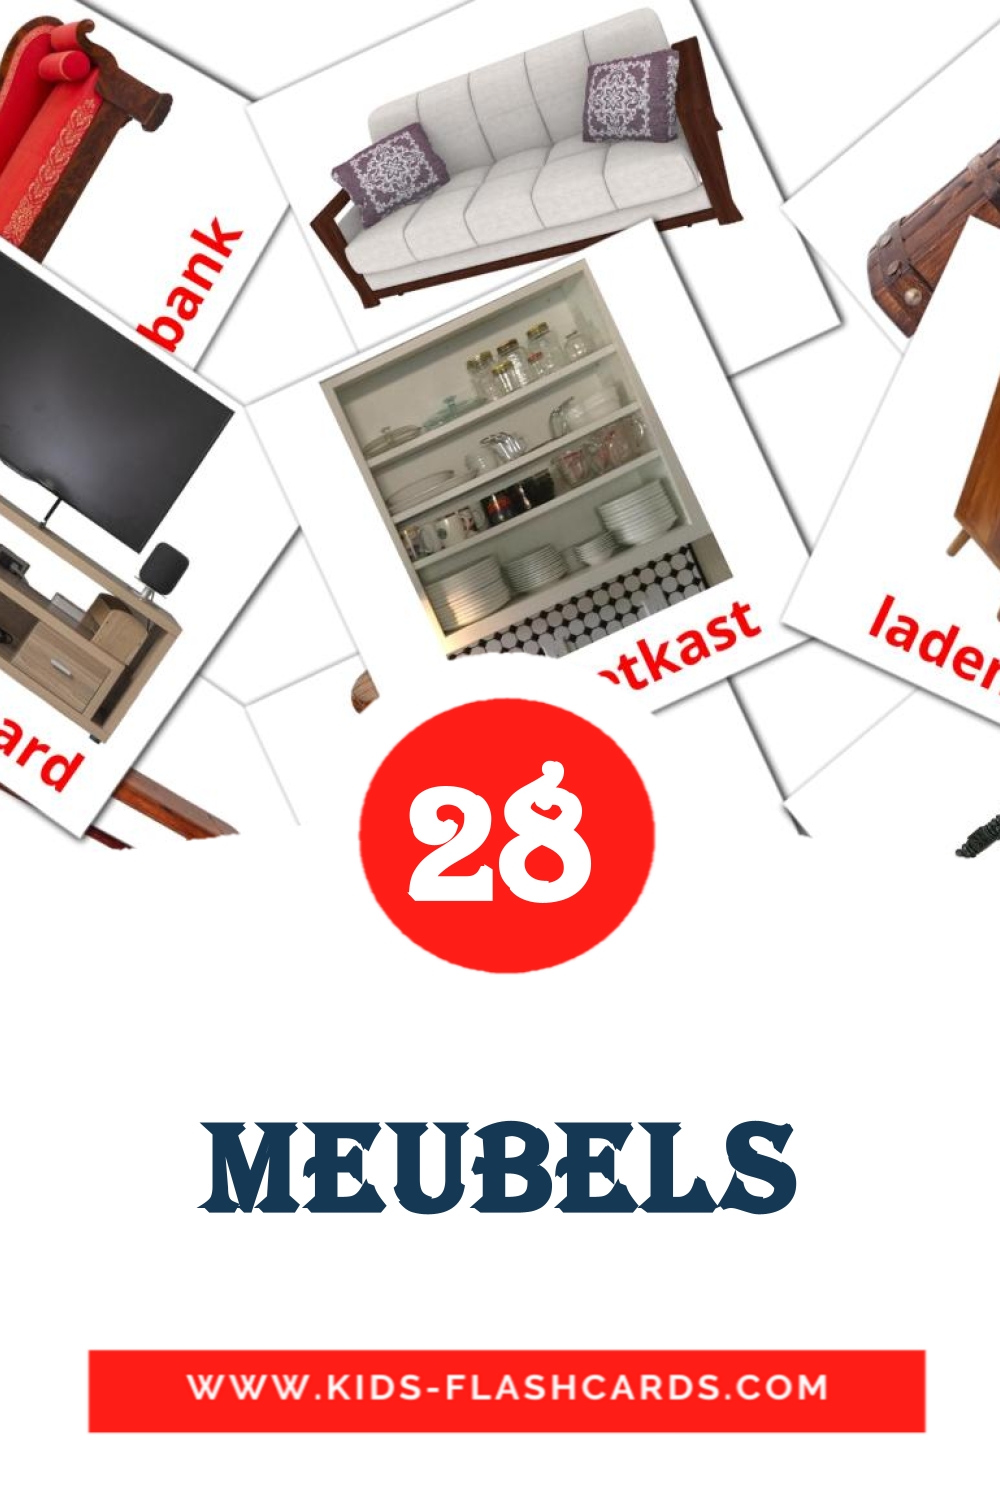 Meubels на нидерландcком для Детского Сада (31 карточка)